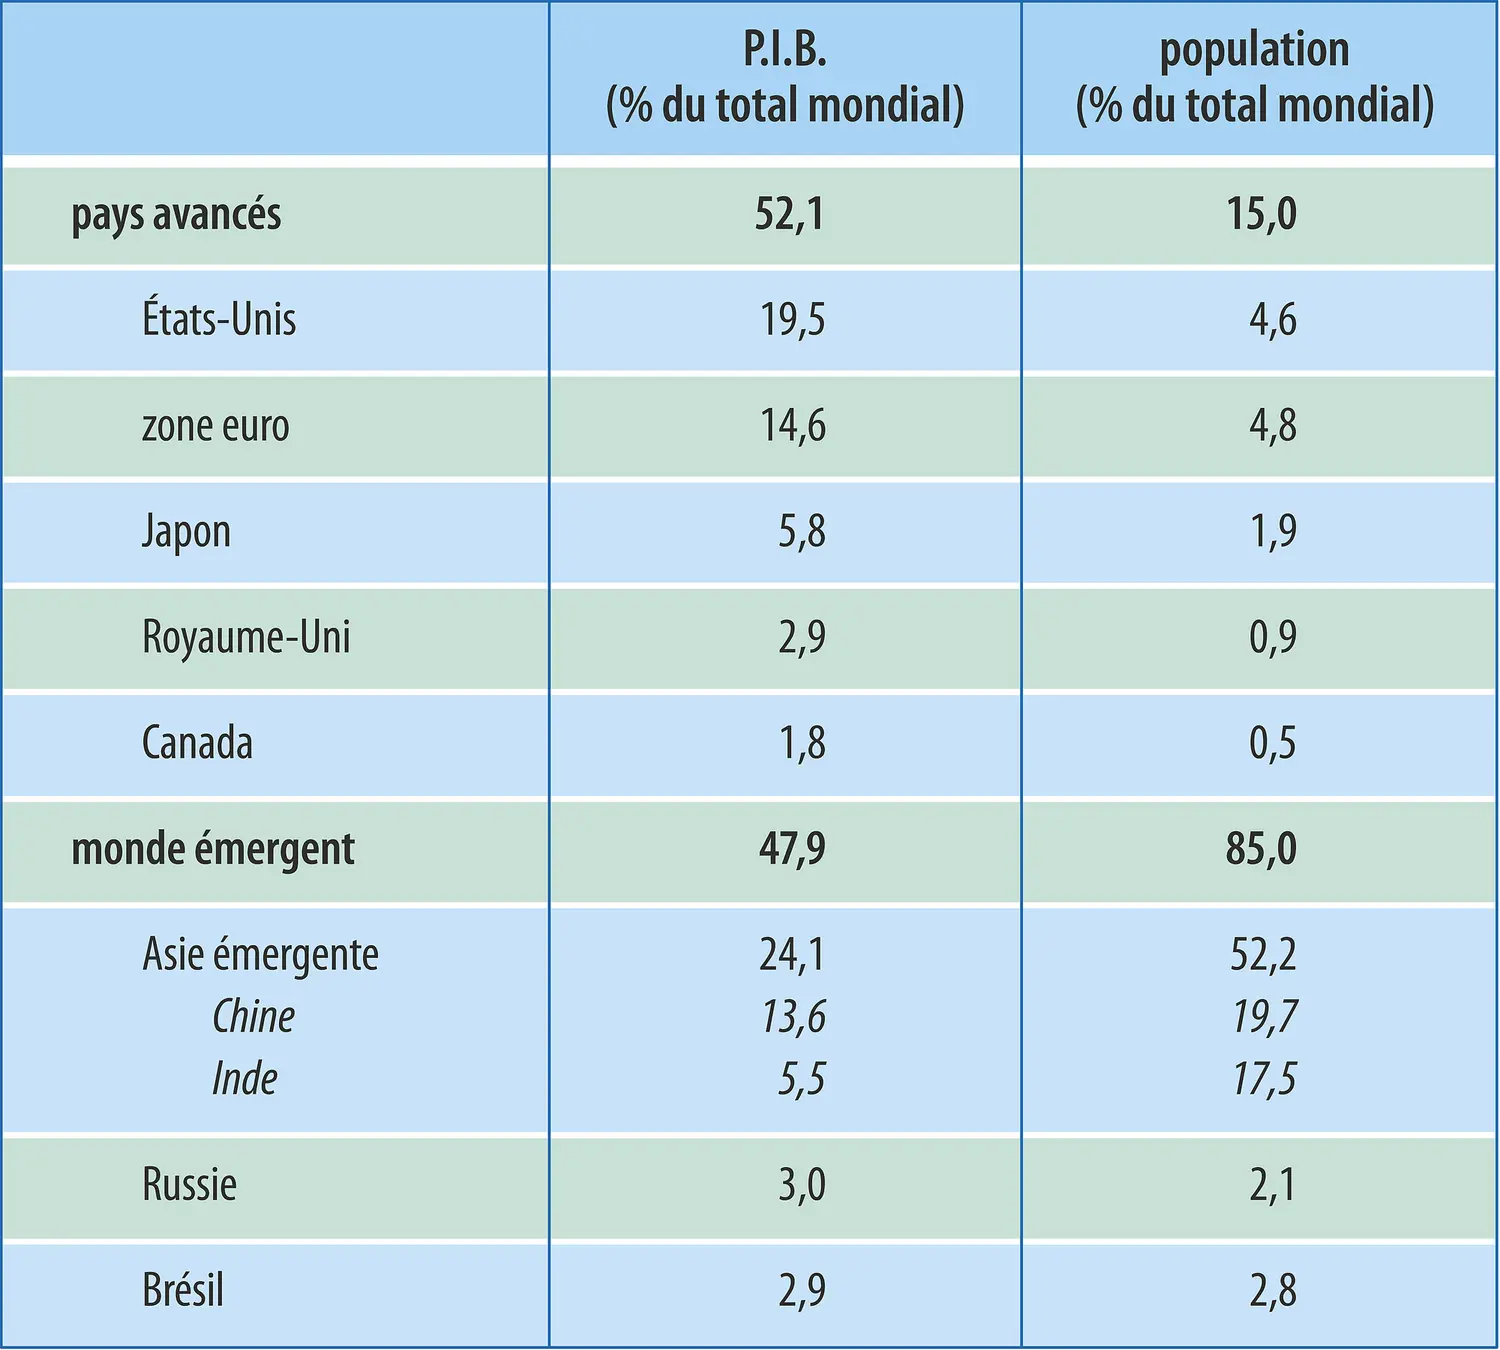 Économie mondiale (2011) : P.I.B. et population